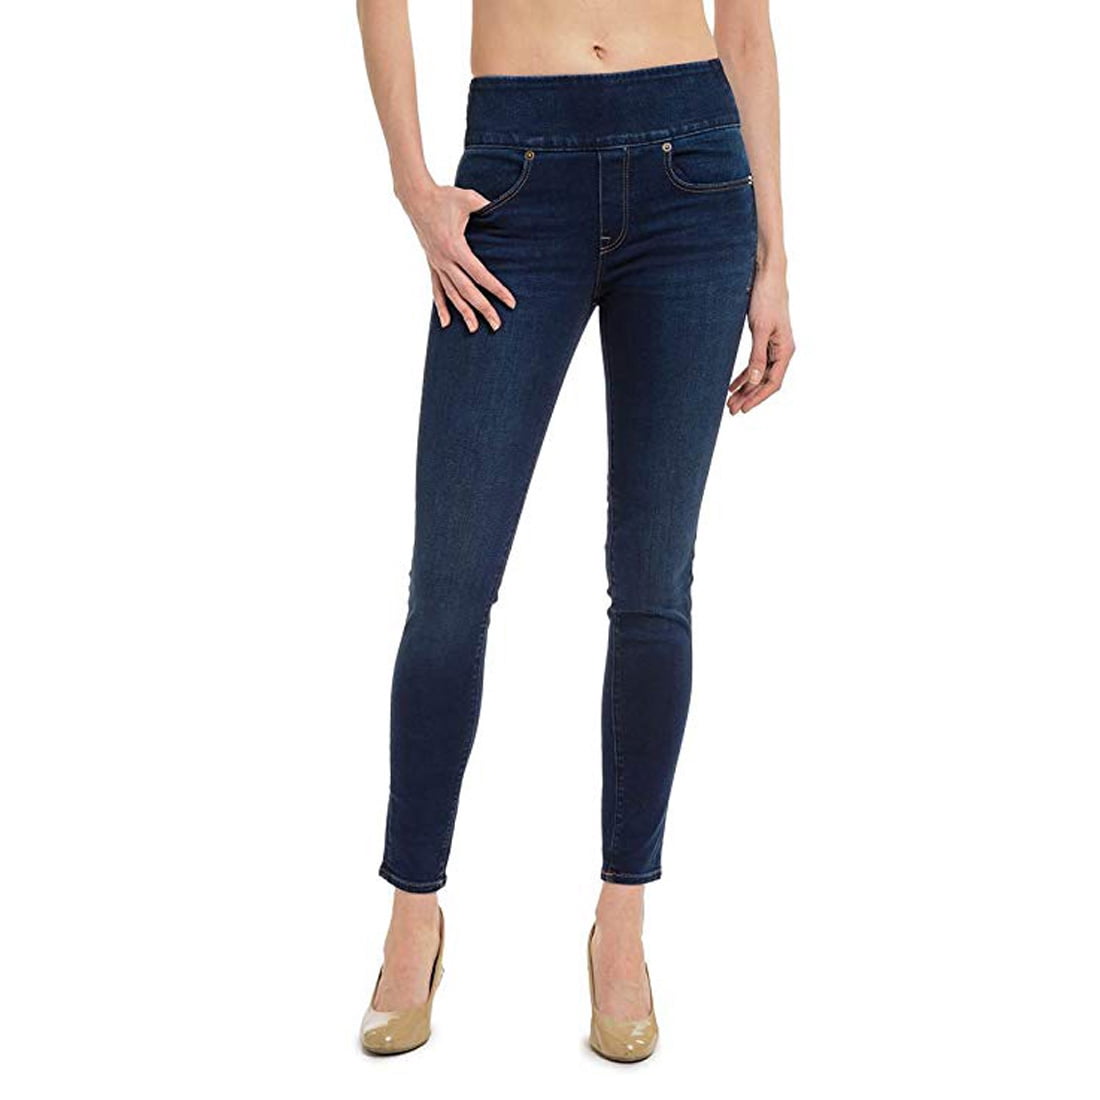 Spanx - Spanx 5 Pocket Slim Boot Jeans, Kirby, 30 - Walmart.com ...